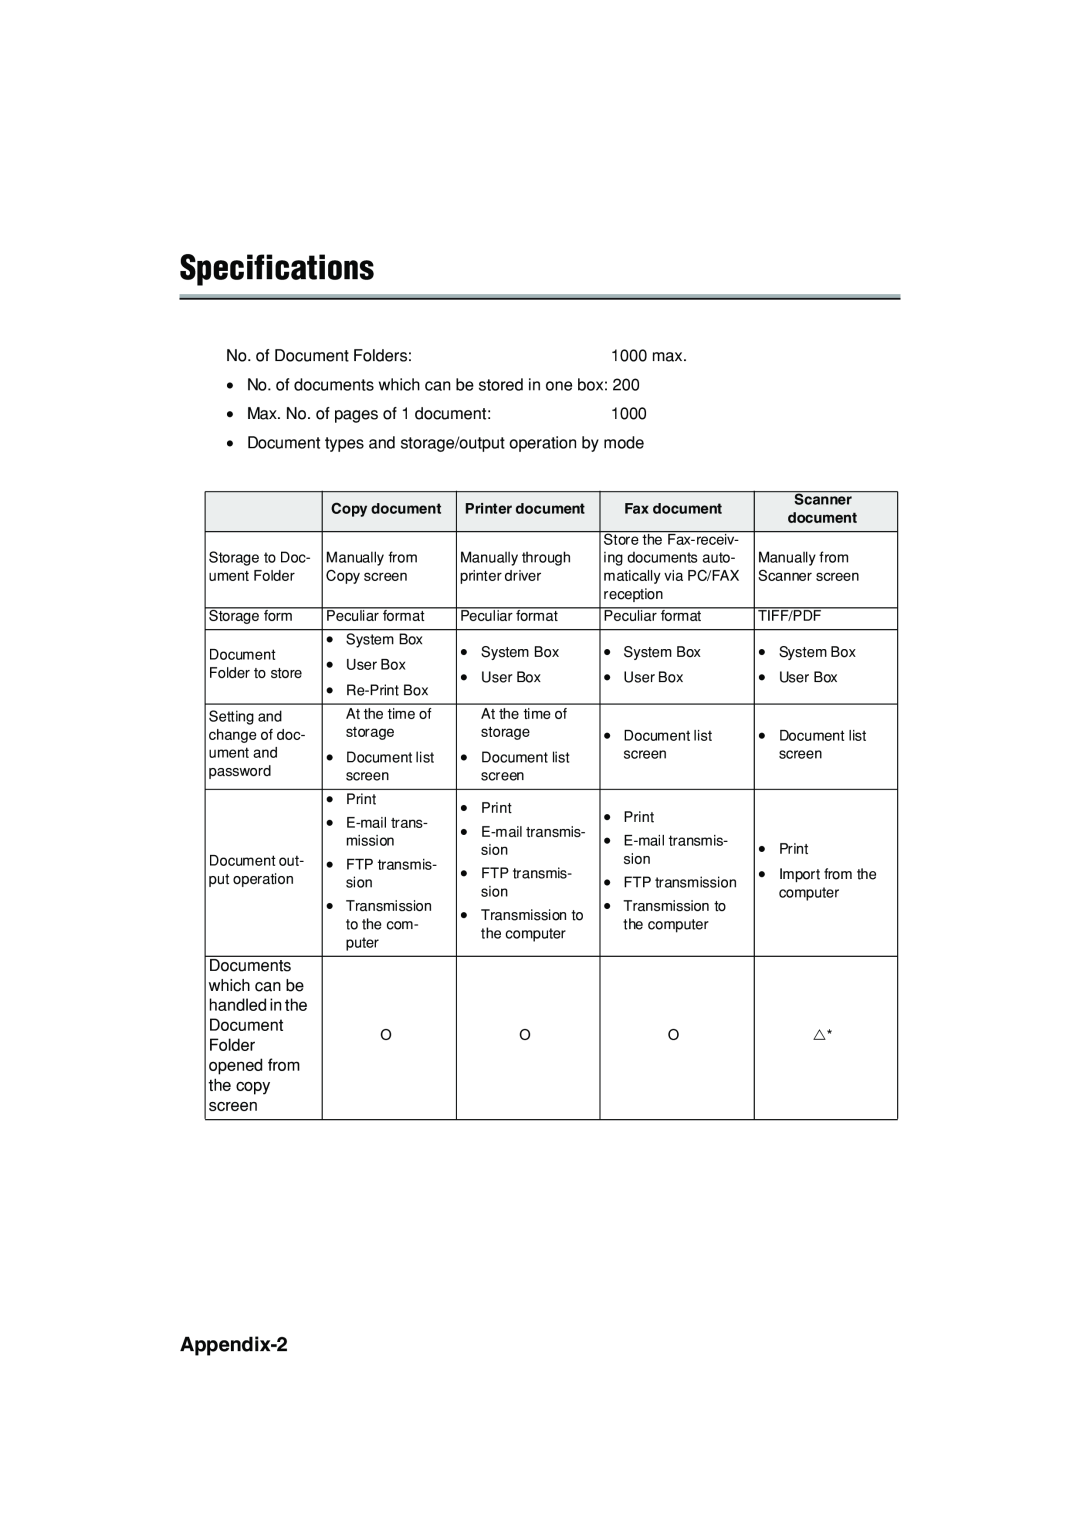 Konica Minolta 7222 manual Specifications, Appendix-2 